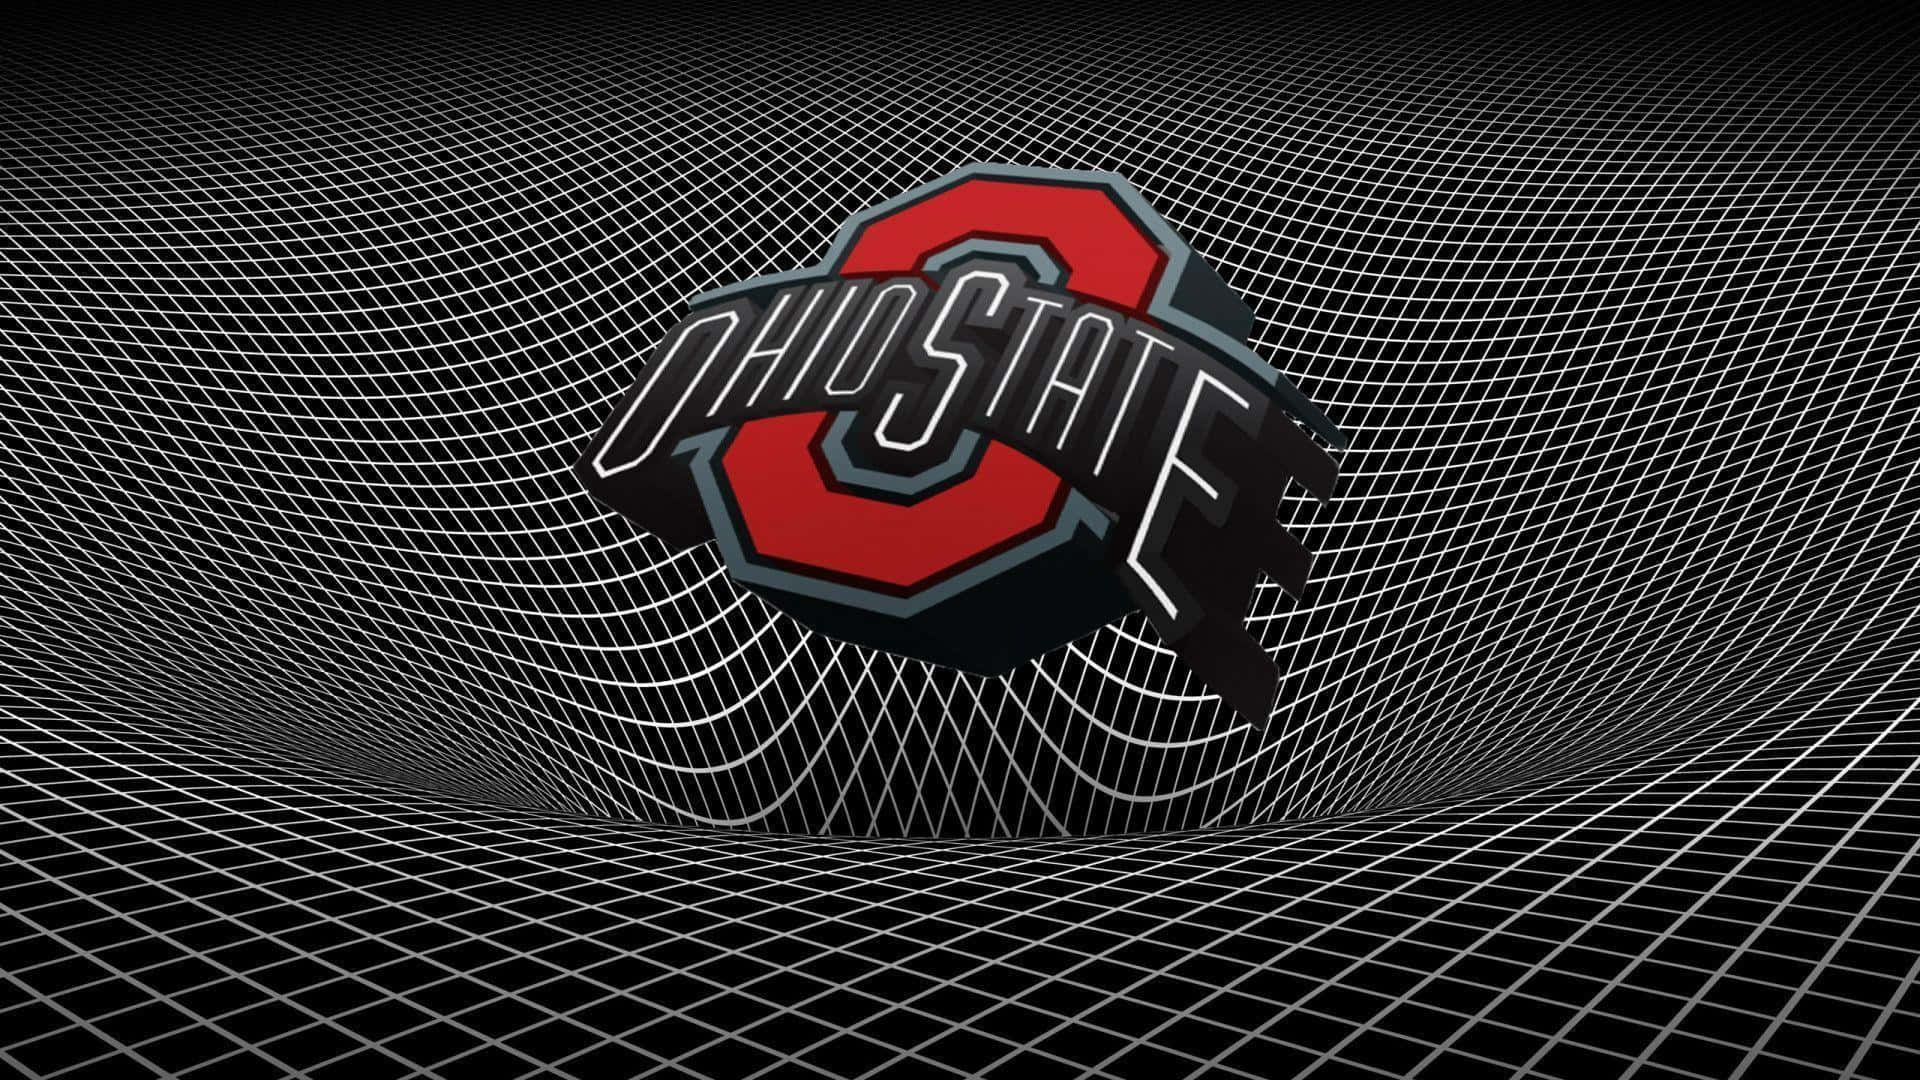 Equipode Fútbol De Ohio State Con Líneas De Cuadrícula Distorsionadas En Arte Digital. Fondo de pantalla